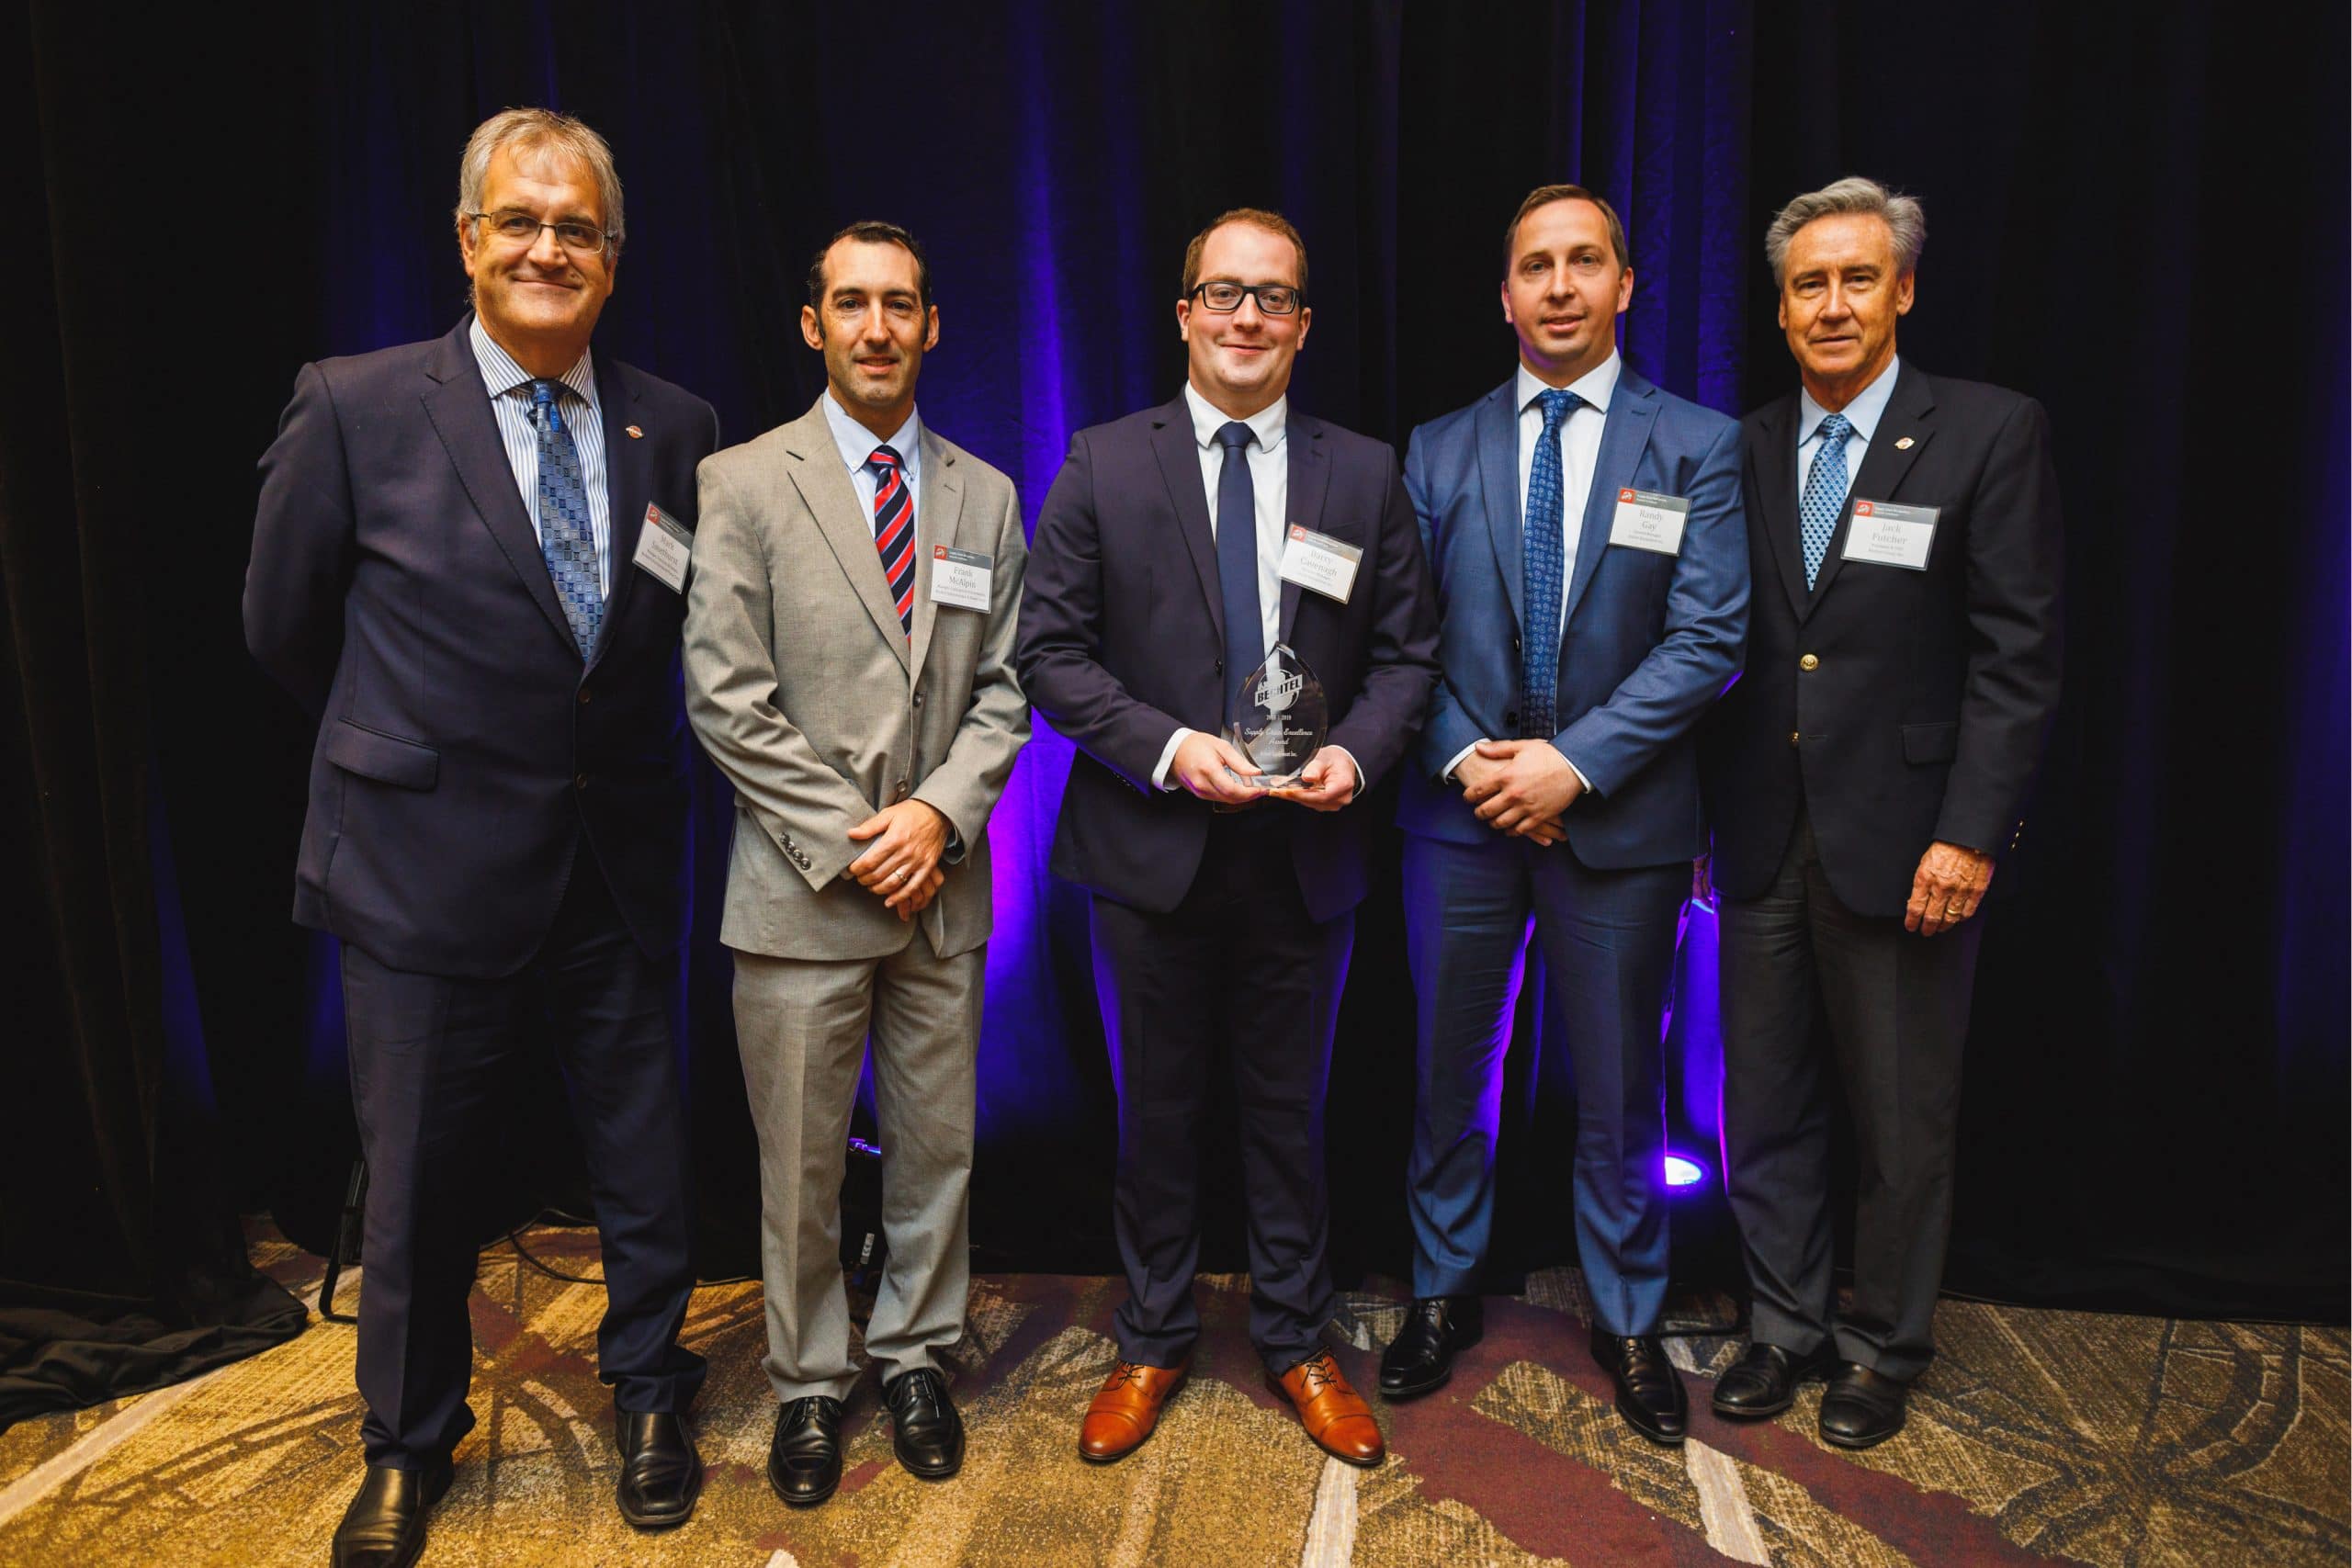 Axiom Equipment Group Accepts Bechtel Award